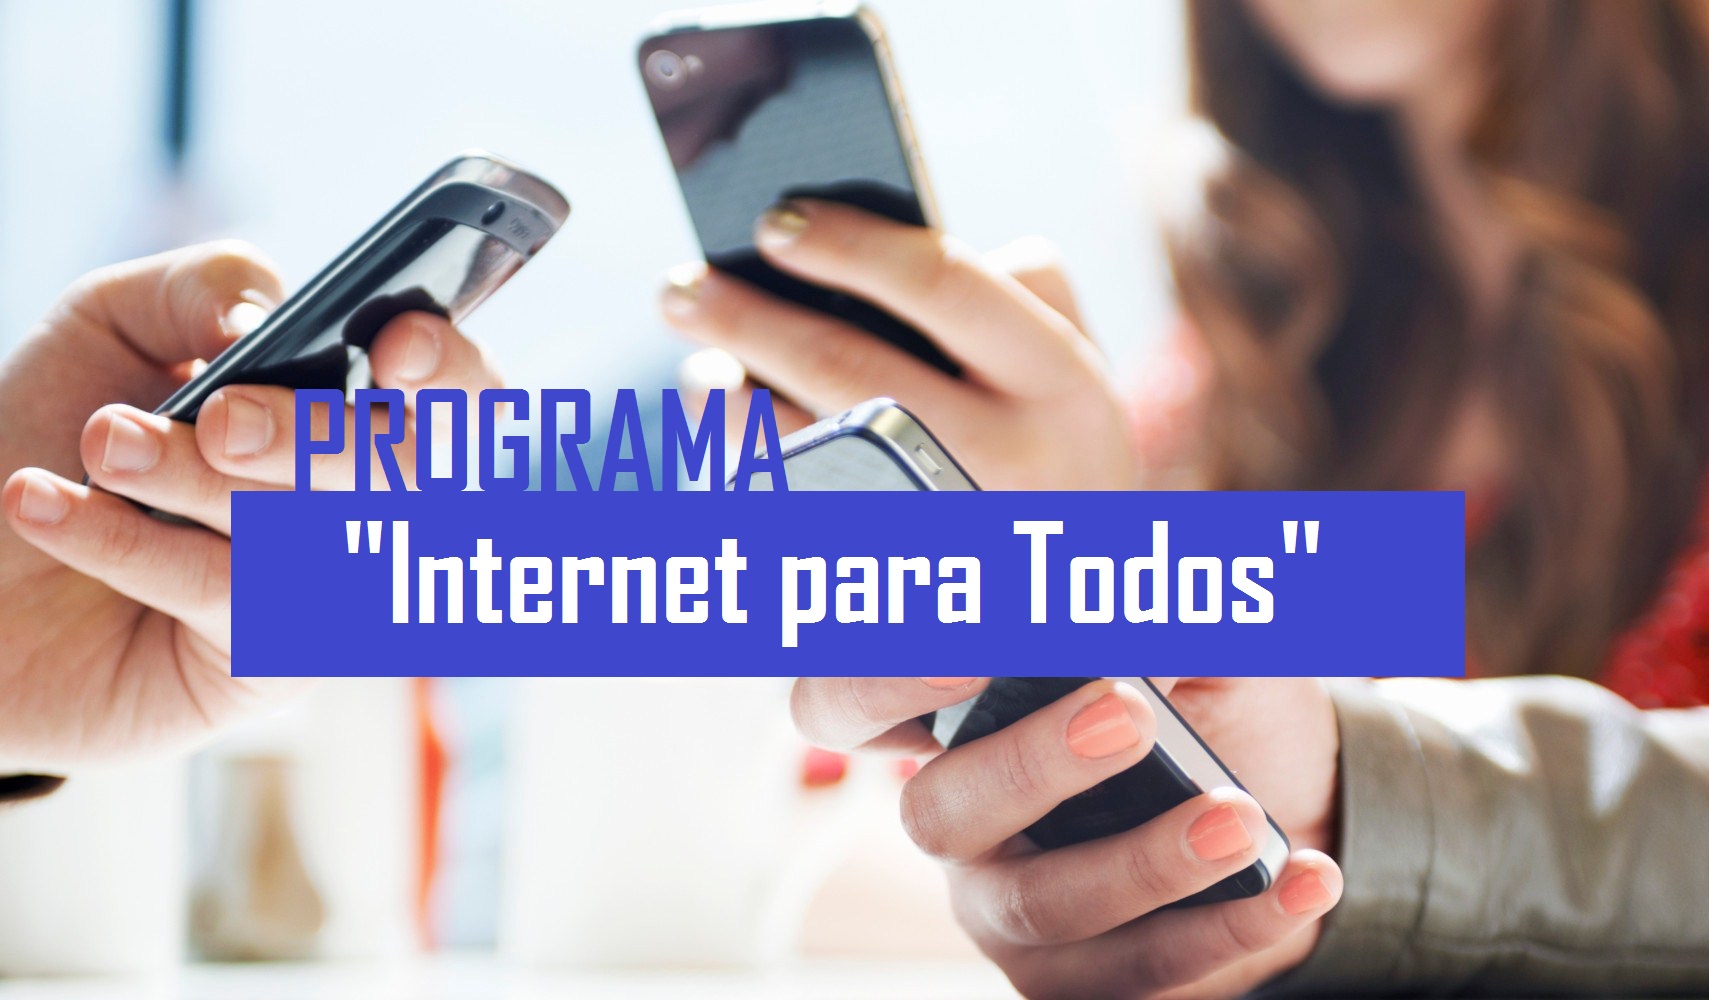 Vereador requer implantação do programa “Internet Para Todos” no município